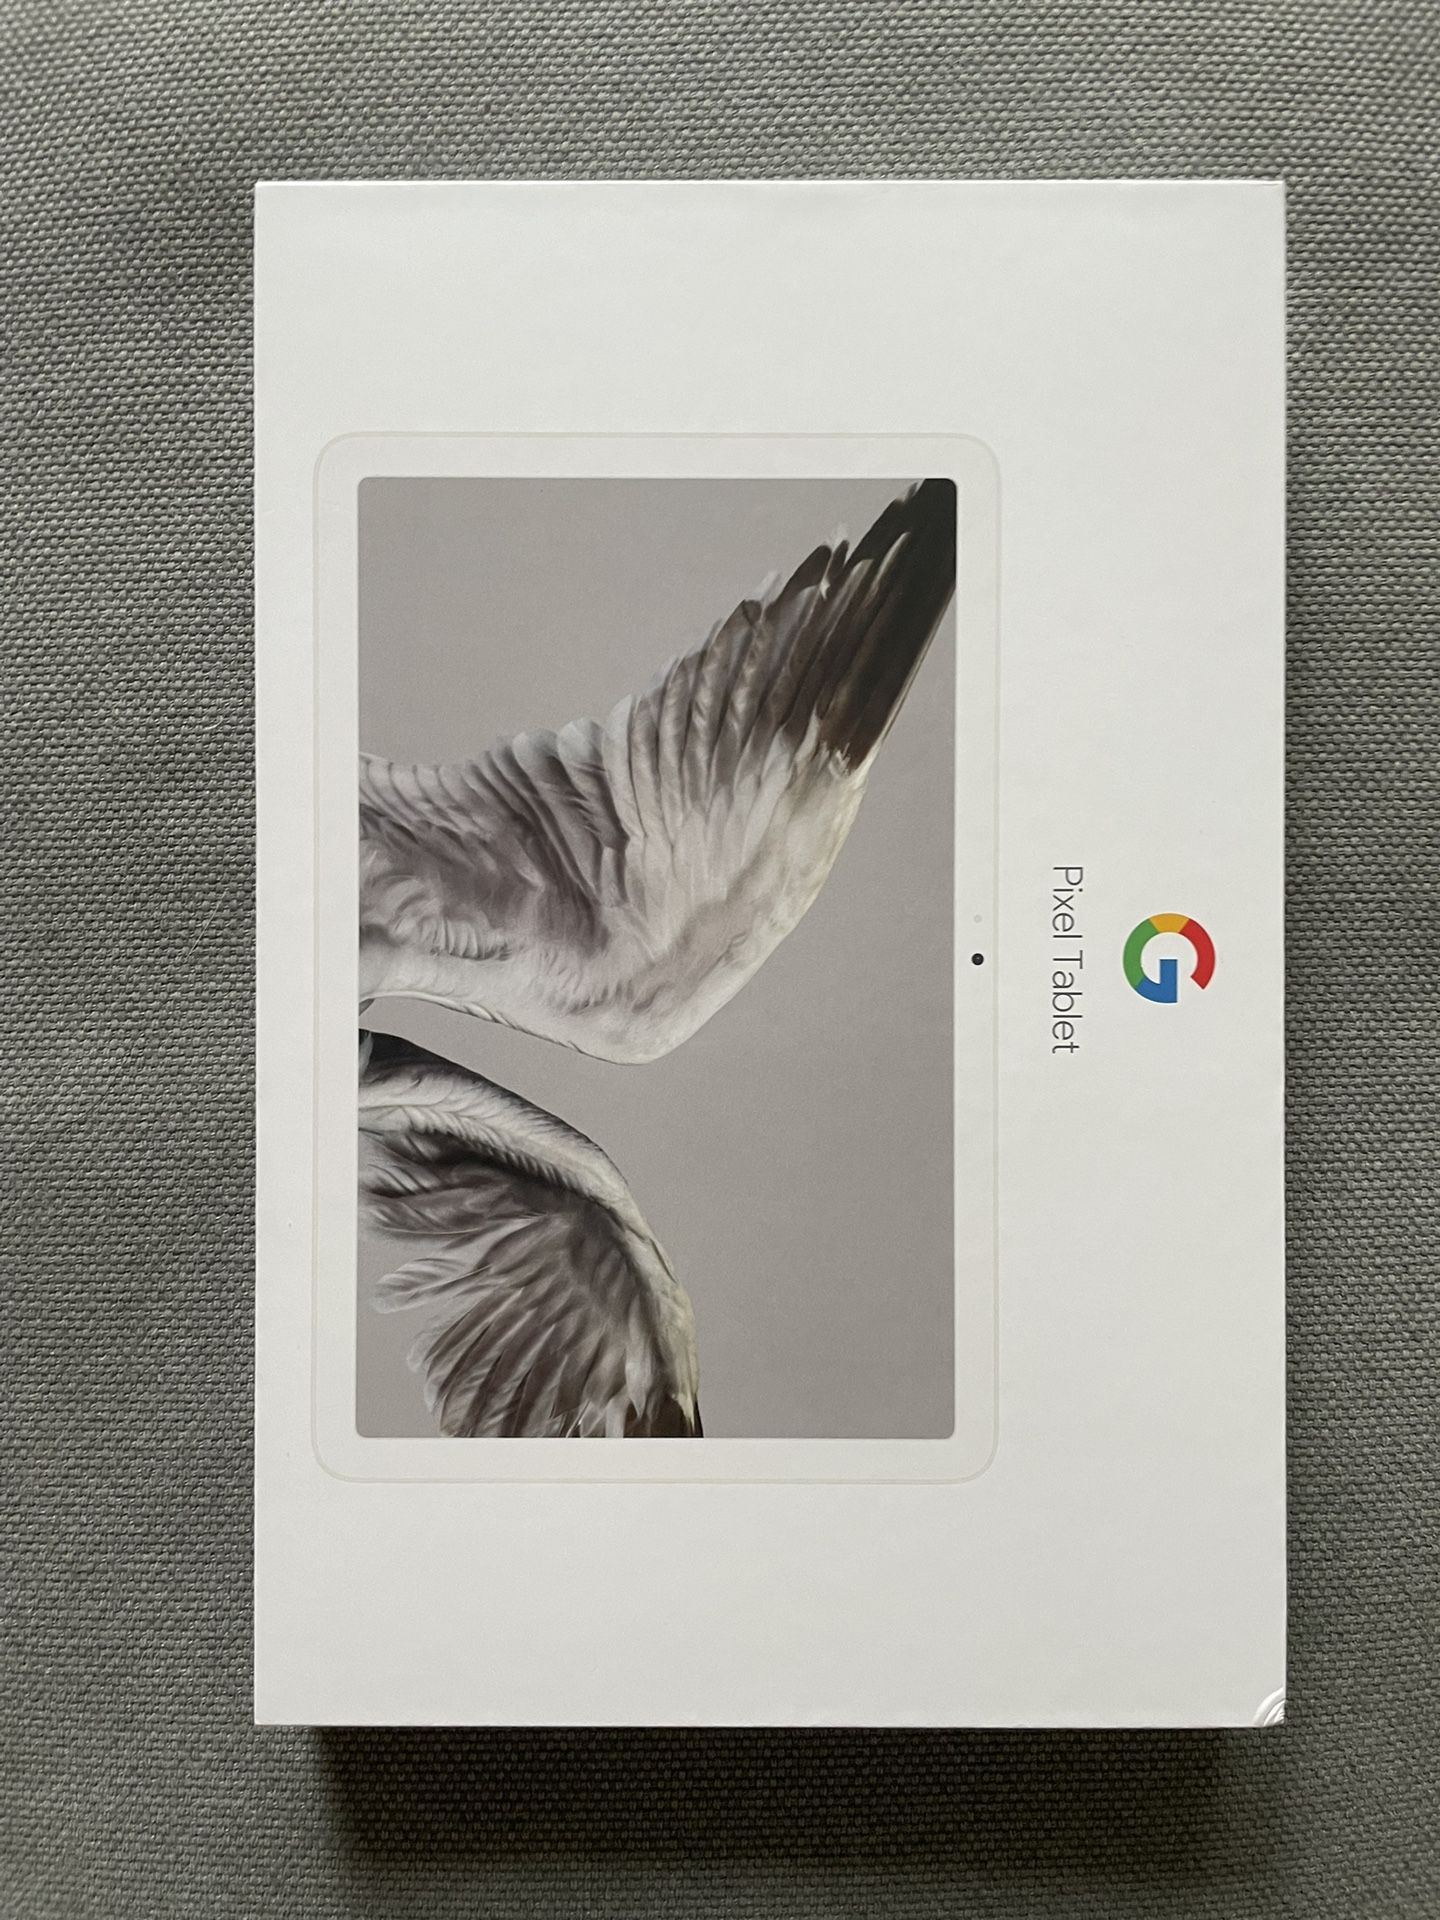 Google Pixel Tablet Porcelain 128 GB New